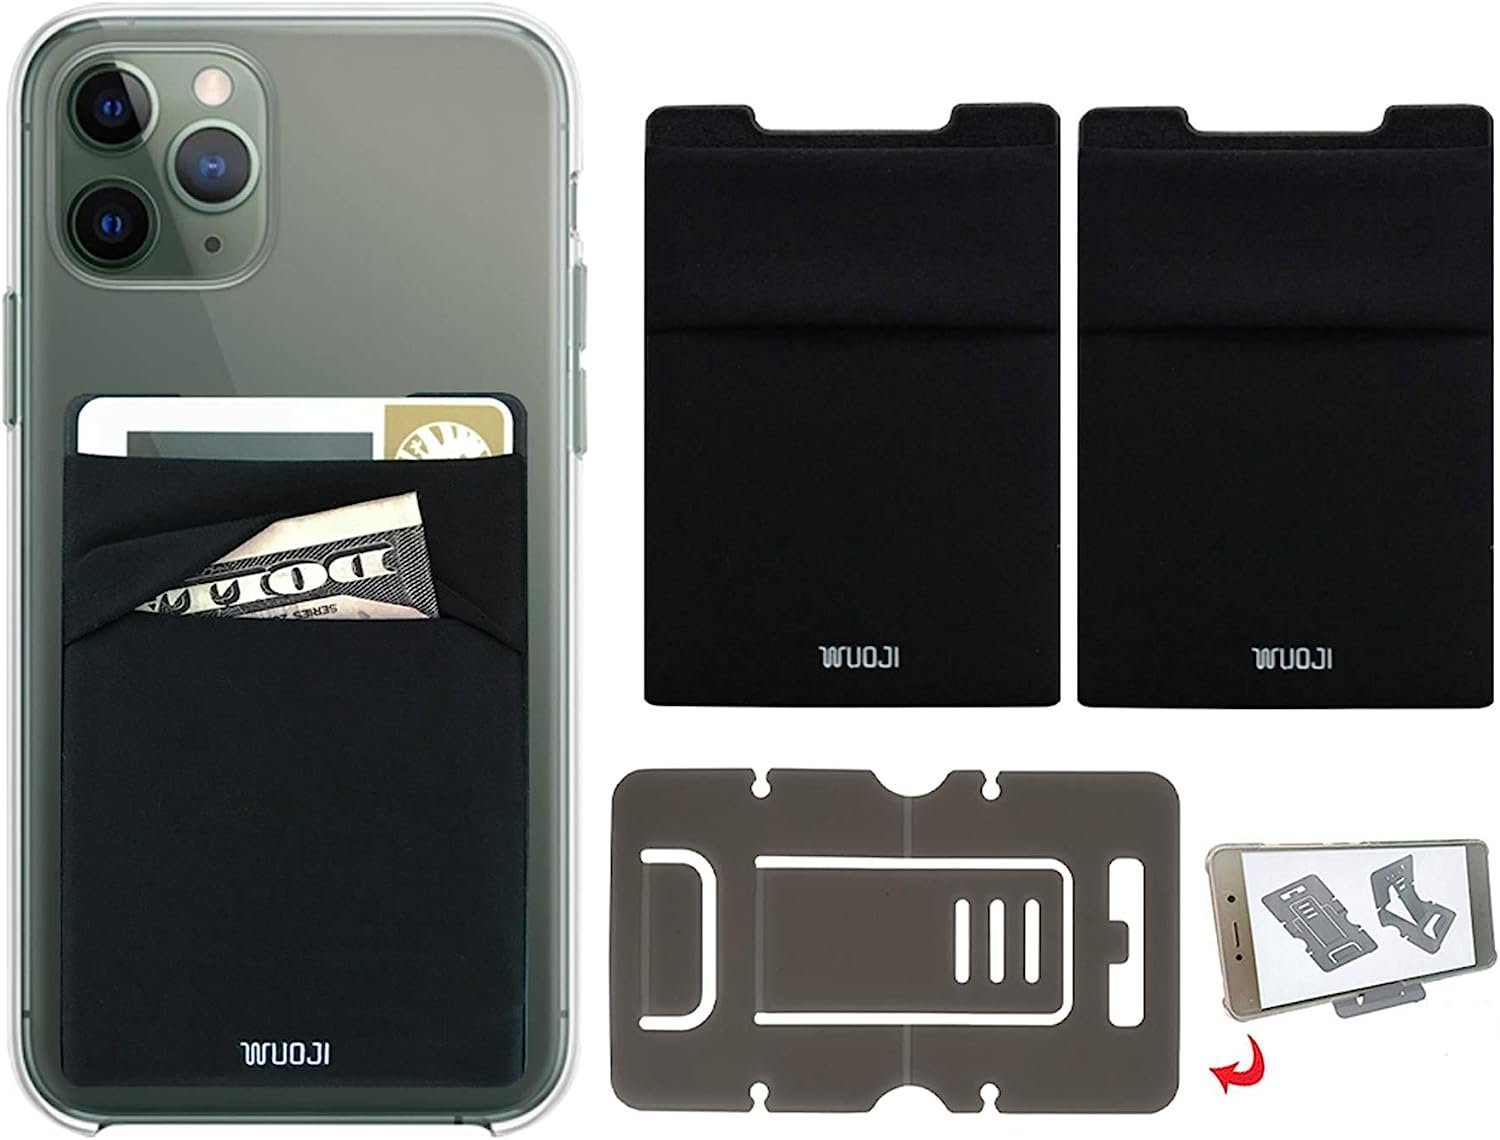 RFID blocking phone card wallet